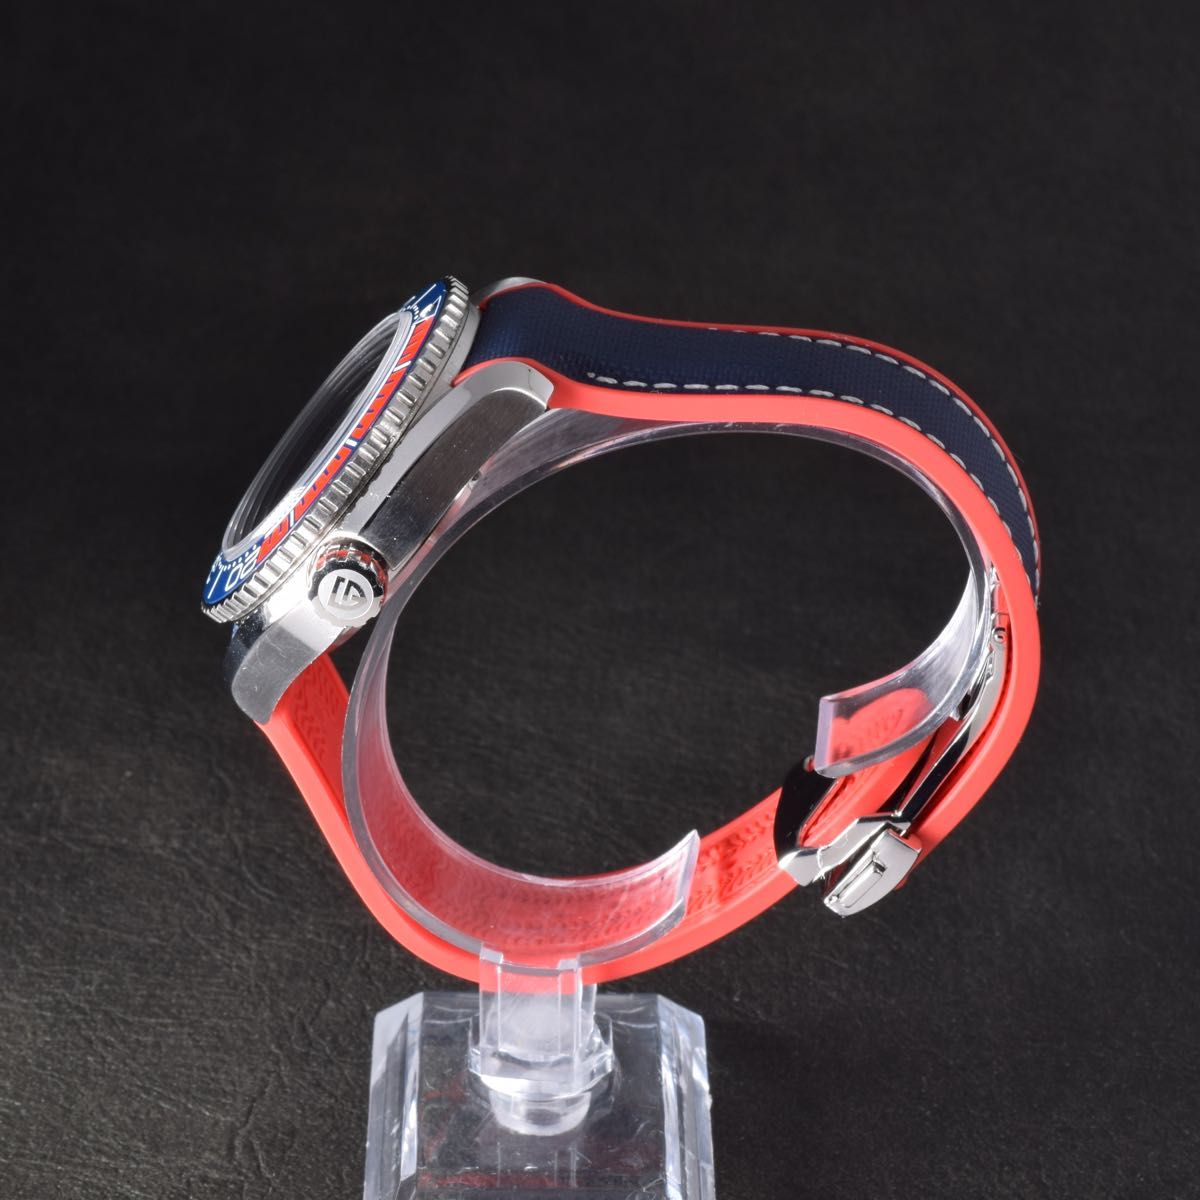 腕時計 メンズ 韓国 セラミック ラバー 青赤 シー お洒落 高級 箱 機械式 オマージュ ラバーバンド セラミックベゼル